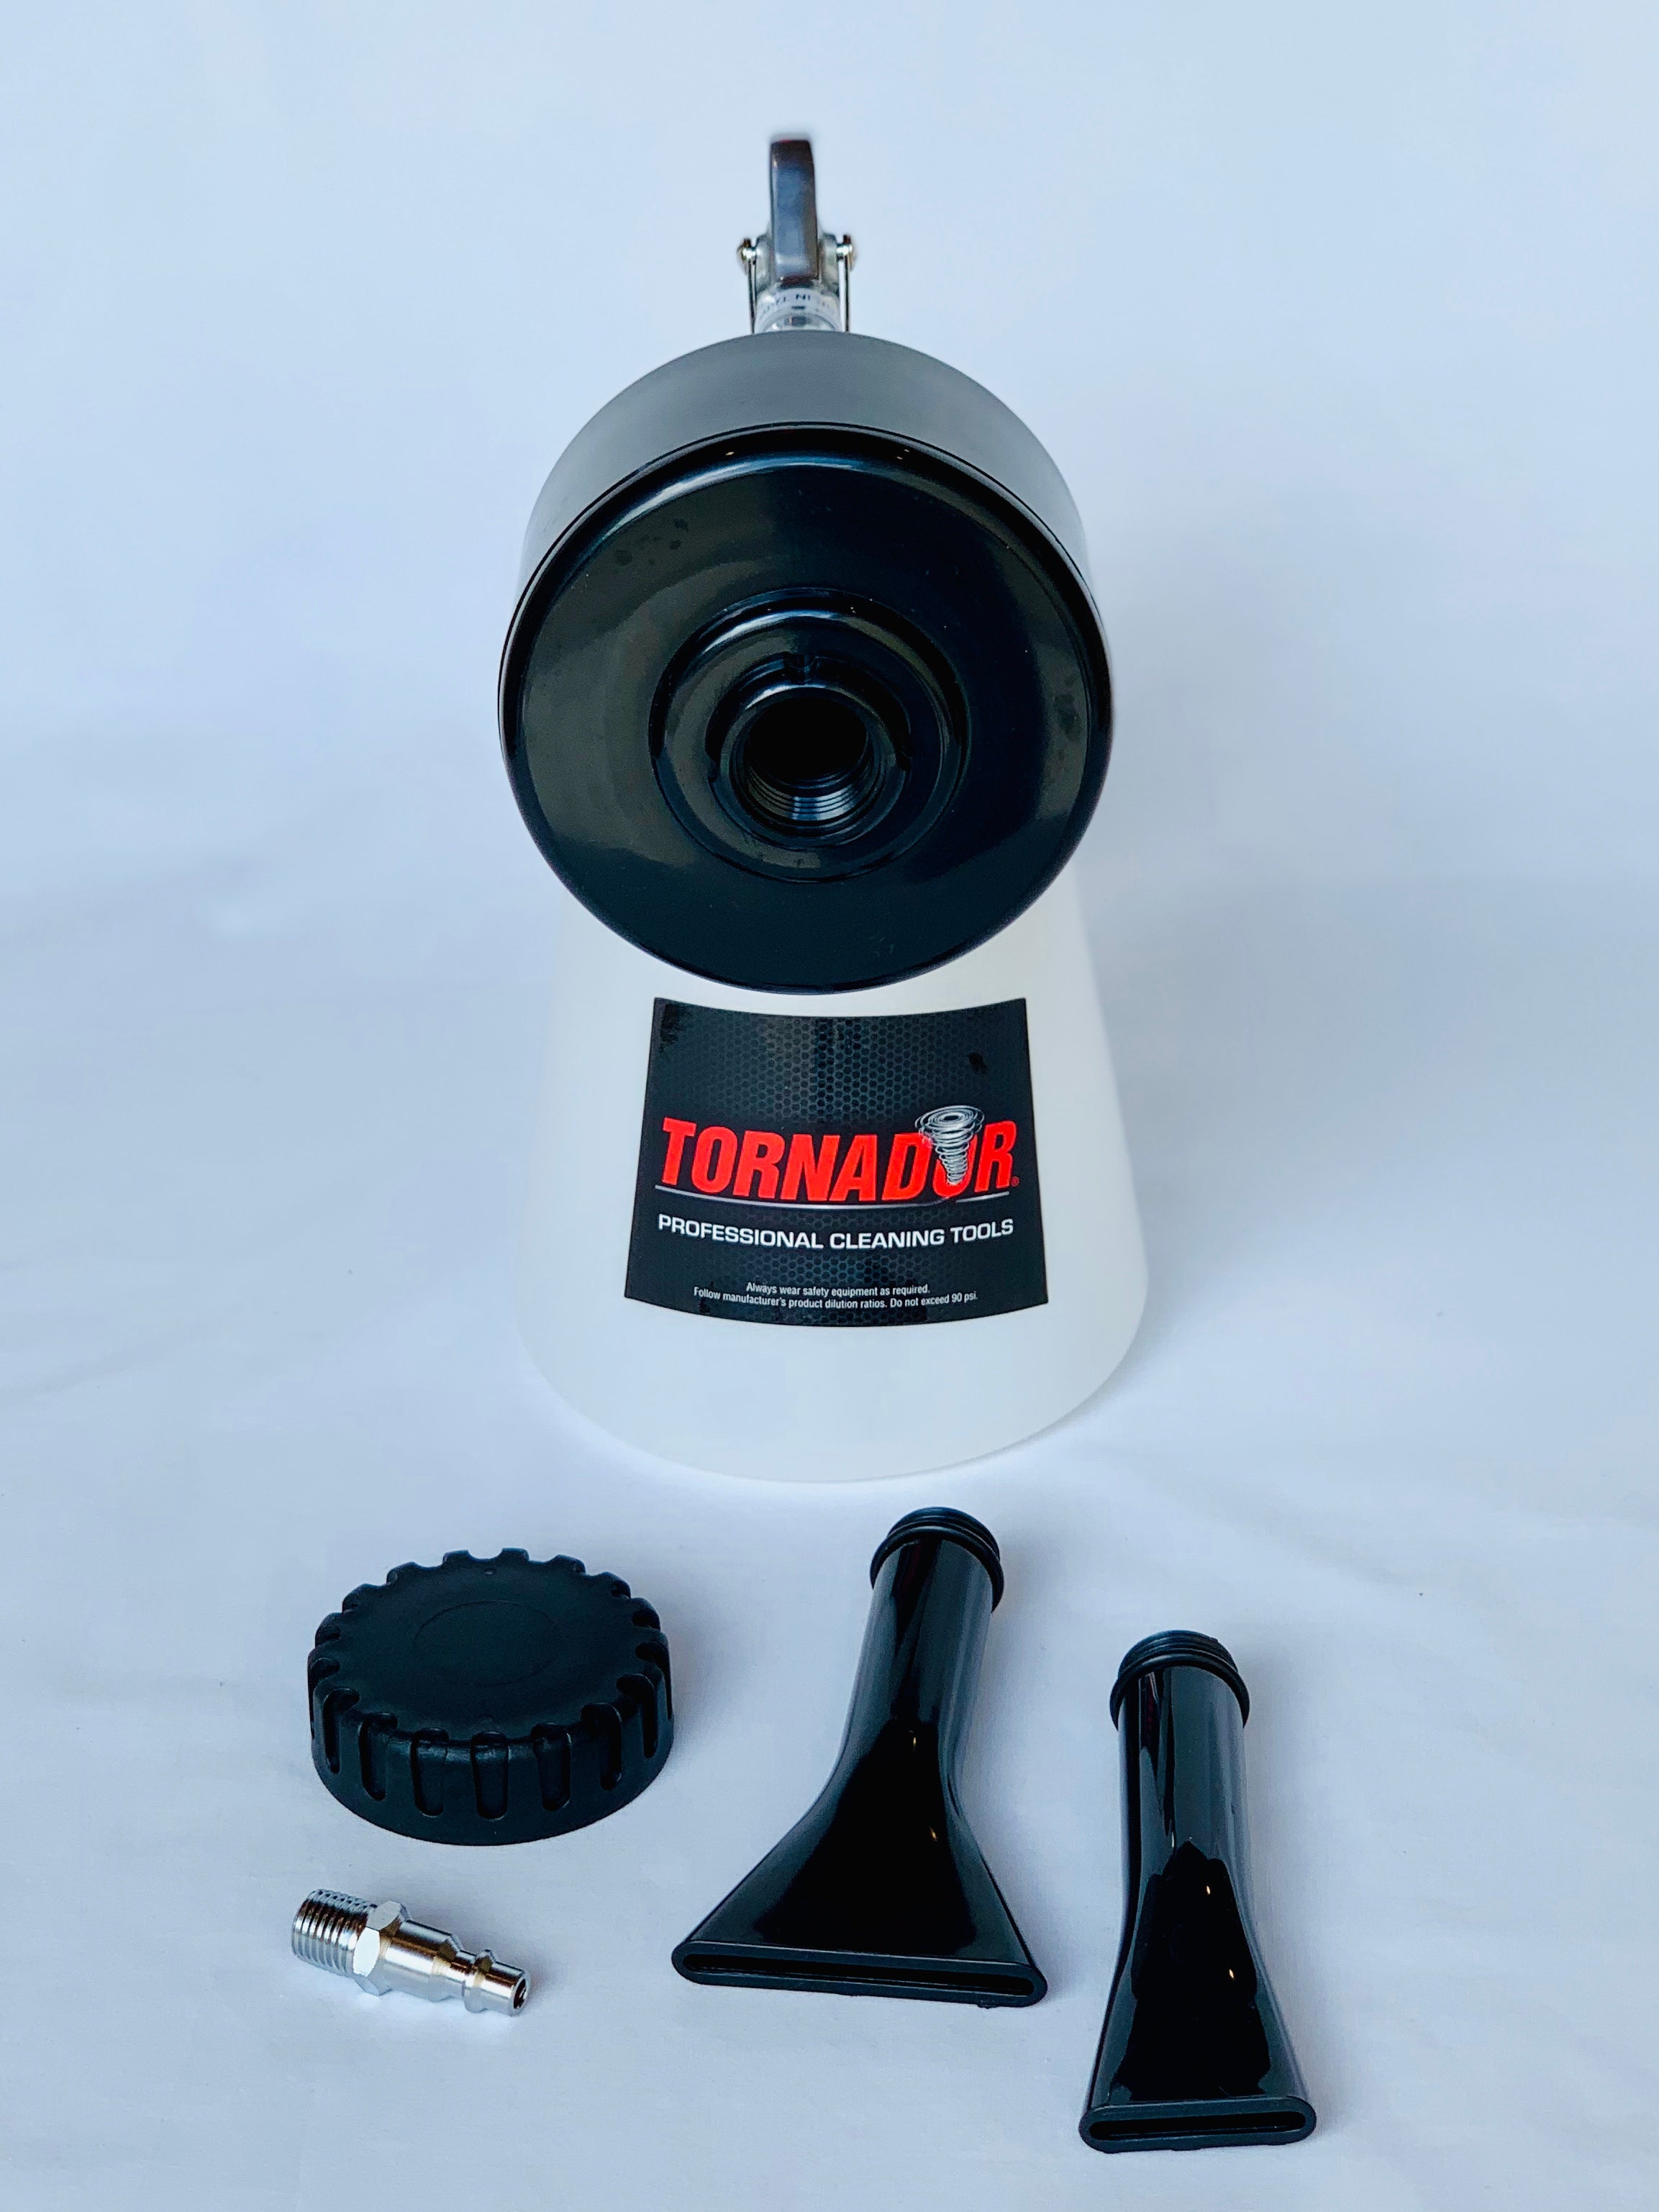 Using the TORNADOR Z-011 Foam Gun 